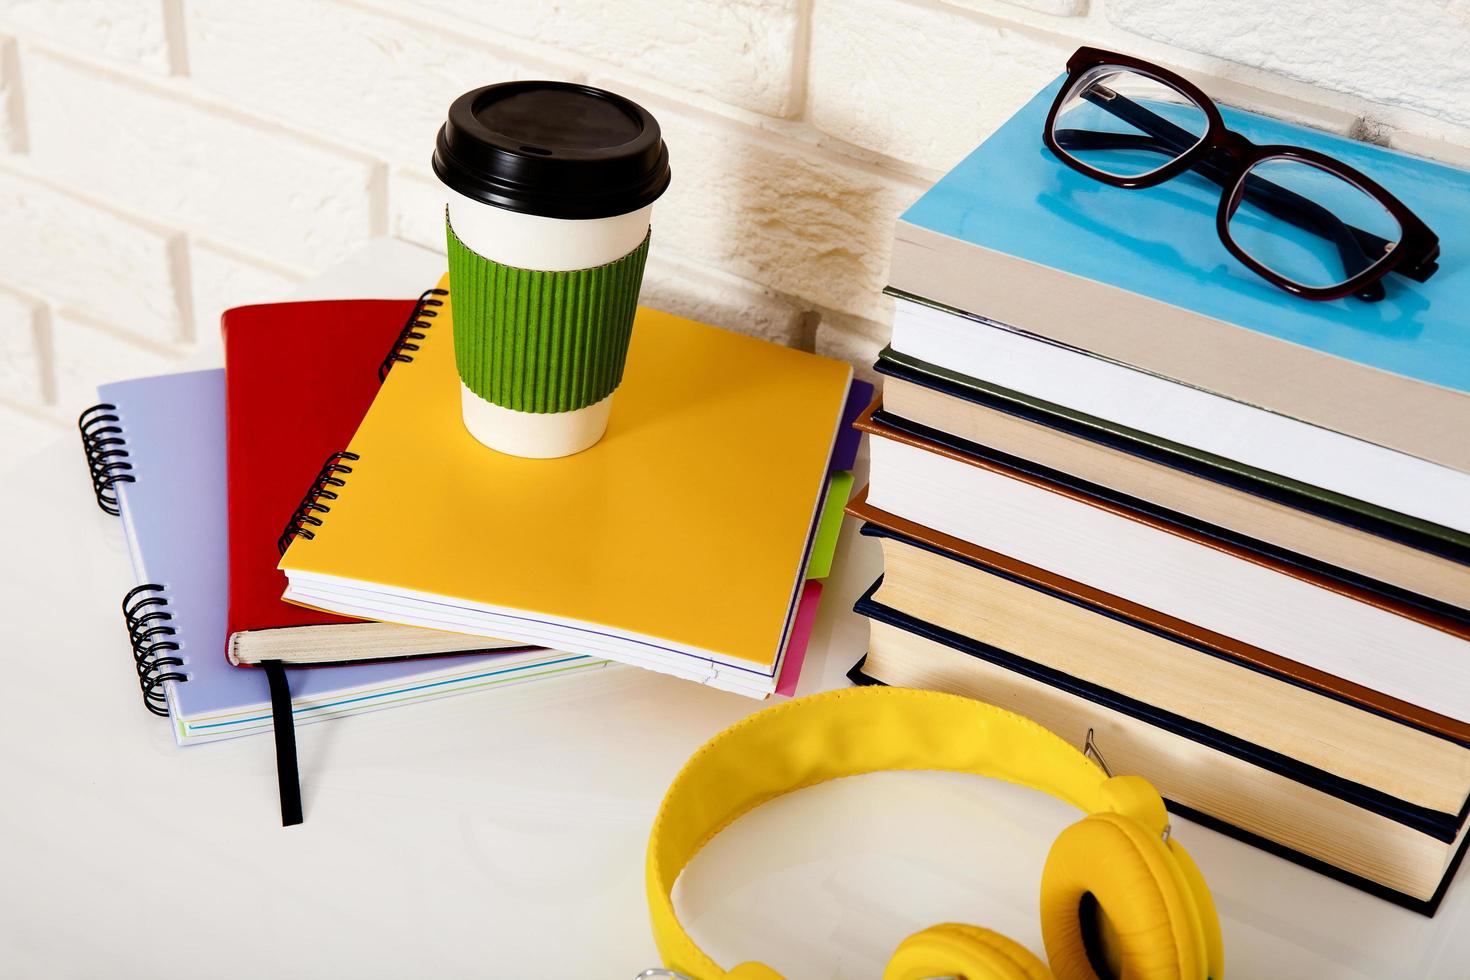 espacio de trabajo y accesorios educativos sobre la mesa. taza de café, libros, vasos, cuadernos, auriculares. educacion madre foto